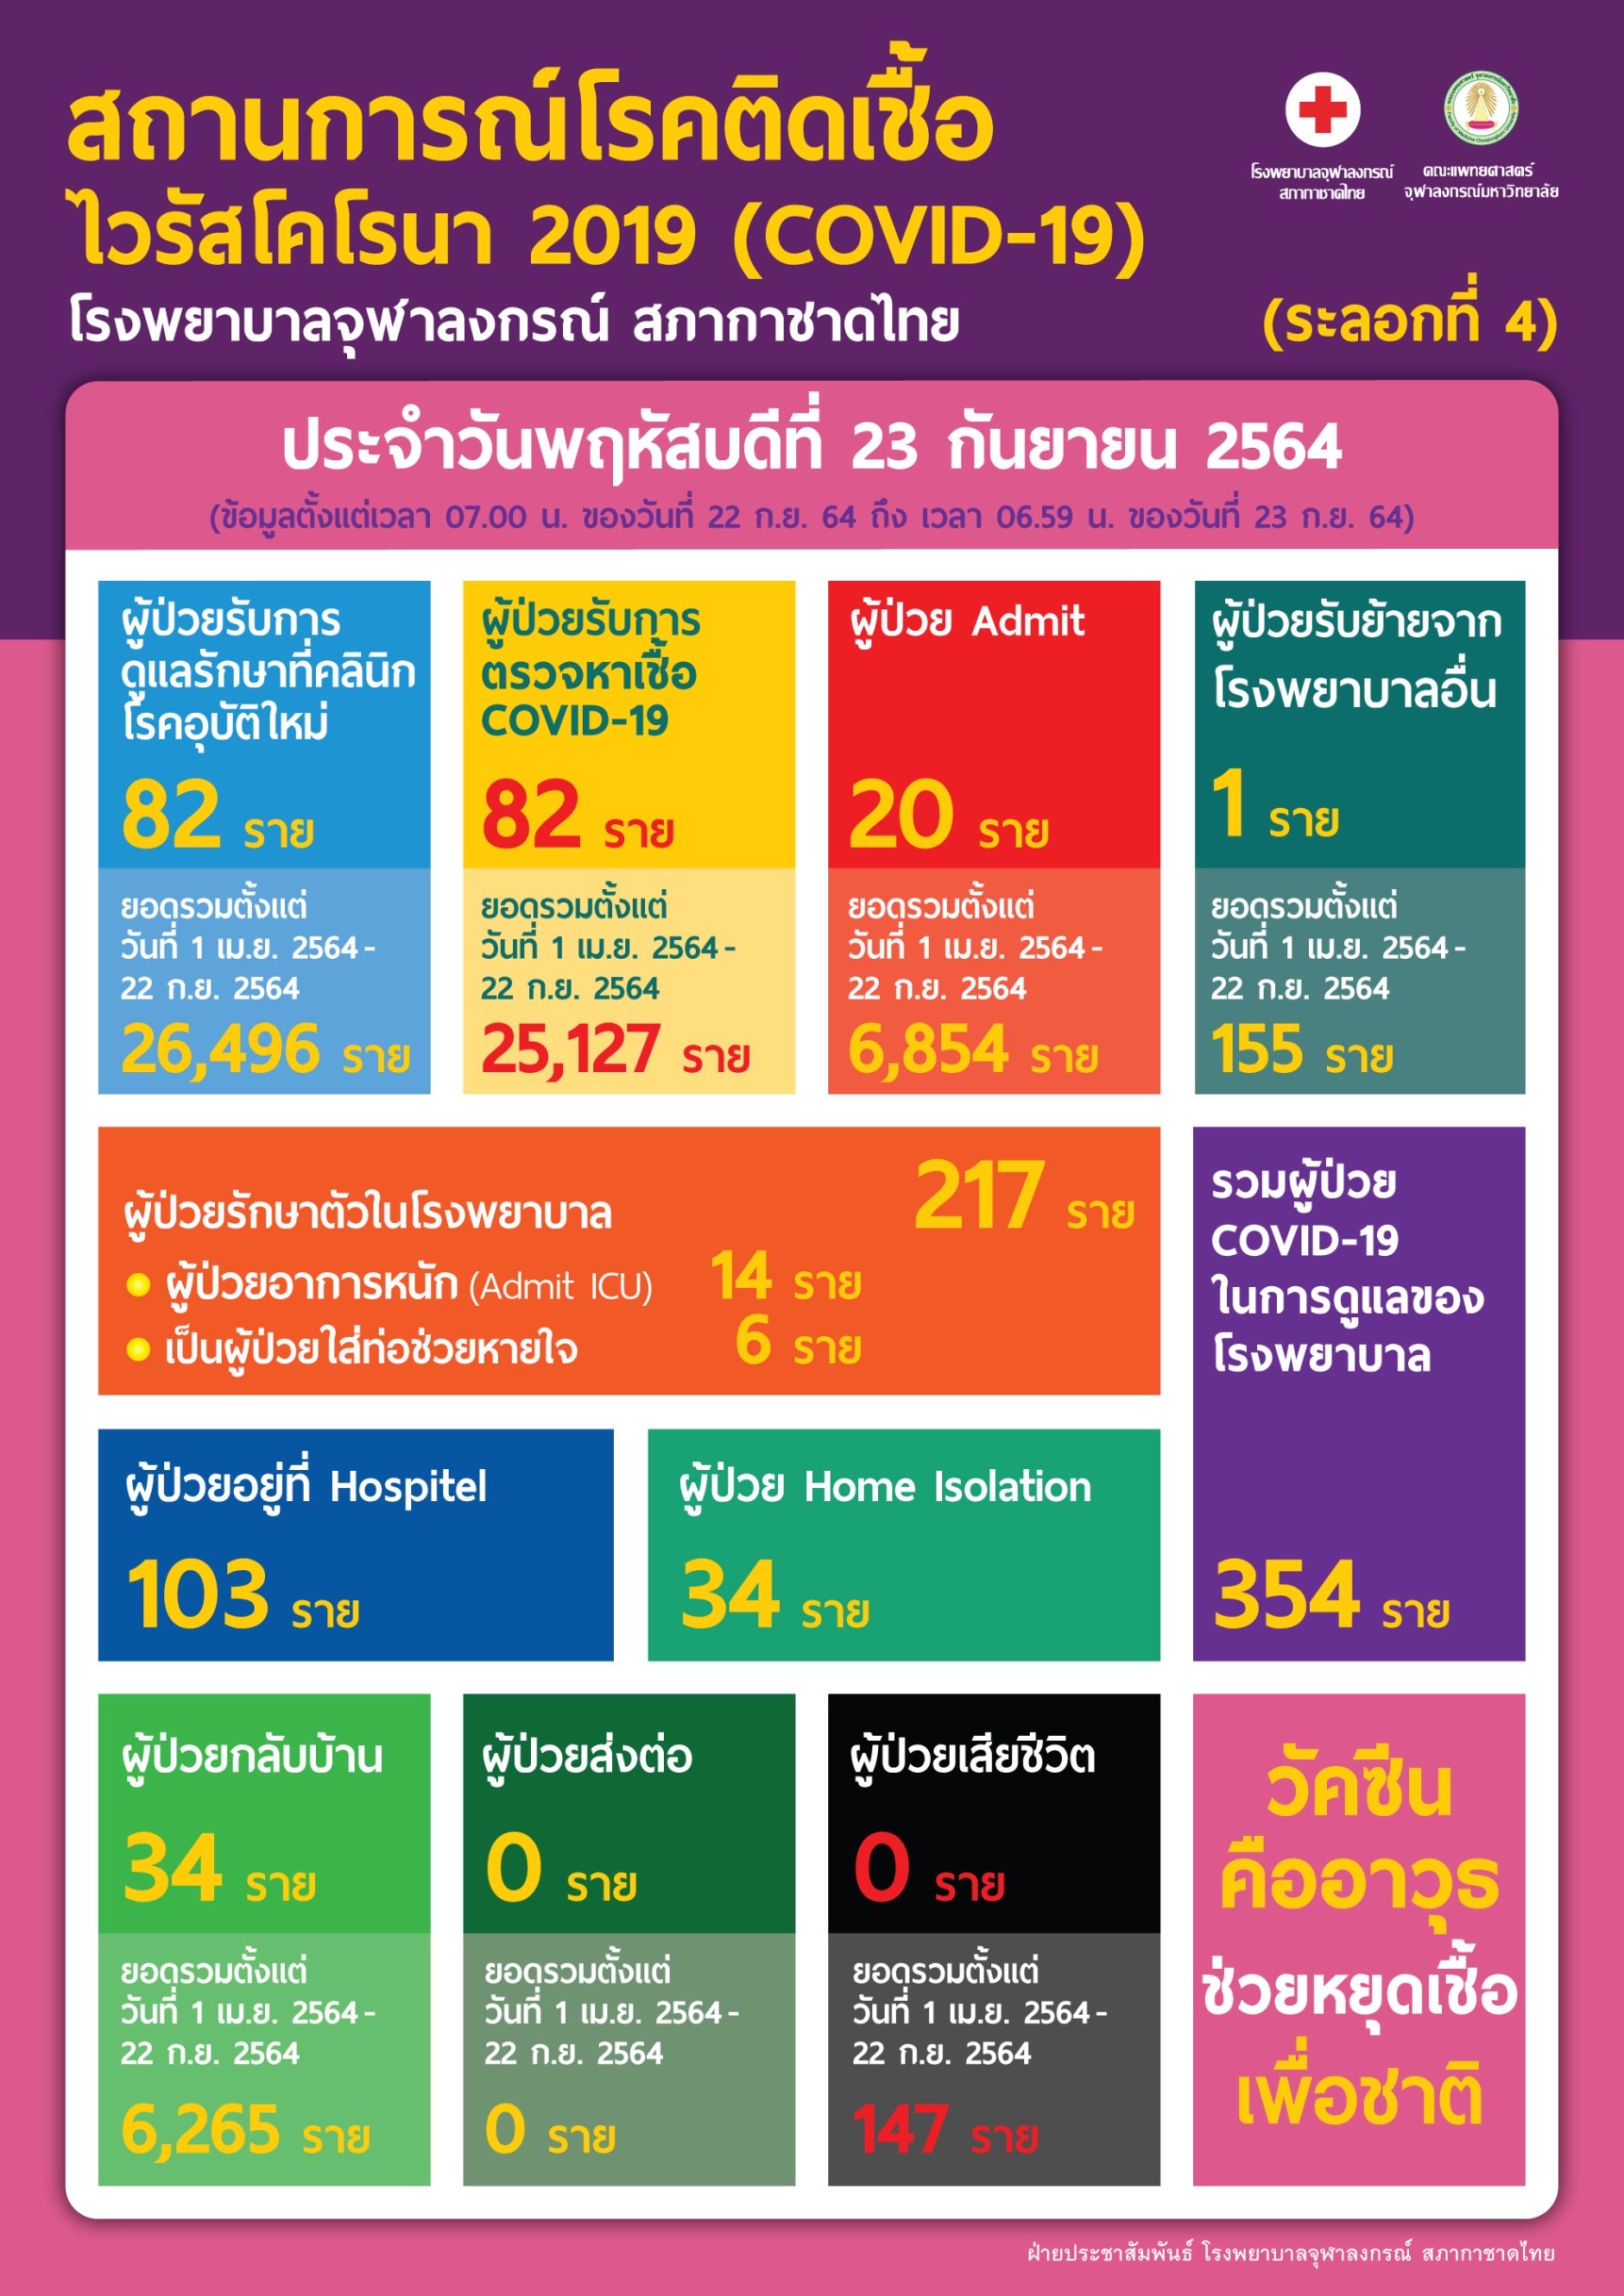 สถานการณ์โรคติดเชื้อไวรัสโคโรนา 2019 (COVID-19)(ระลอกที่ 4) โรงพยาบาลจุฬาลงกรณ์ สภากาชาดไทย ประจำวันพฤหัสบดีที่ 23 กันยายน 2564